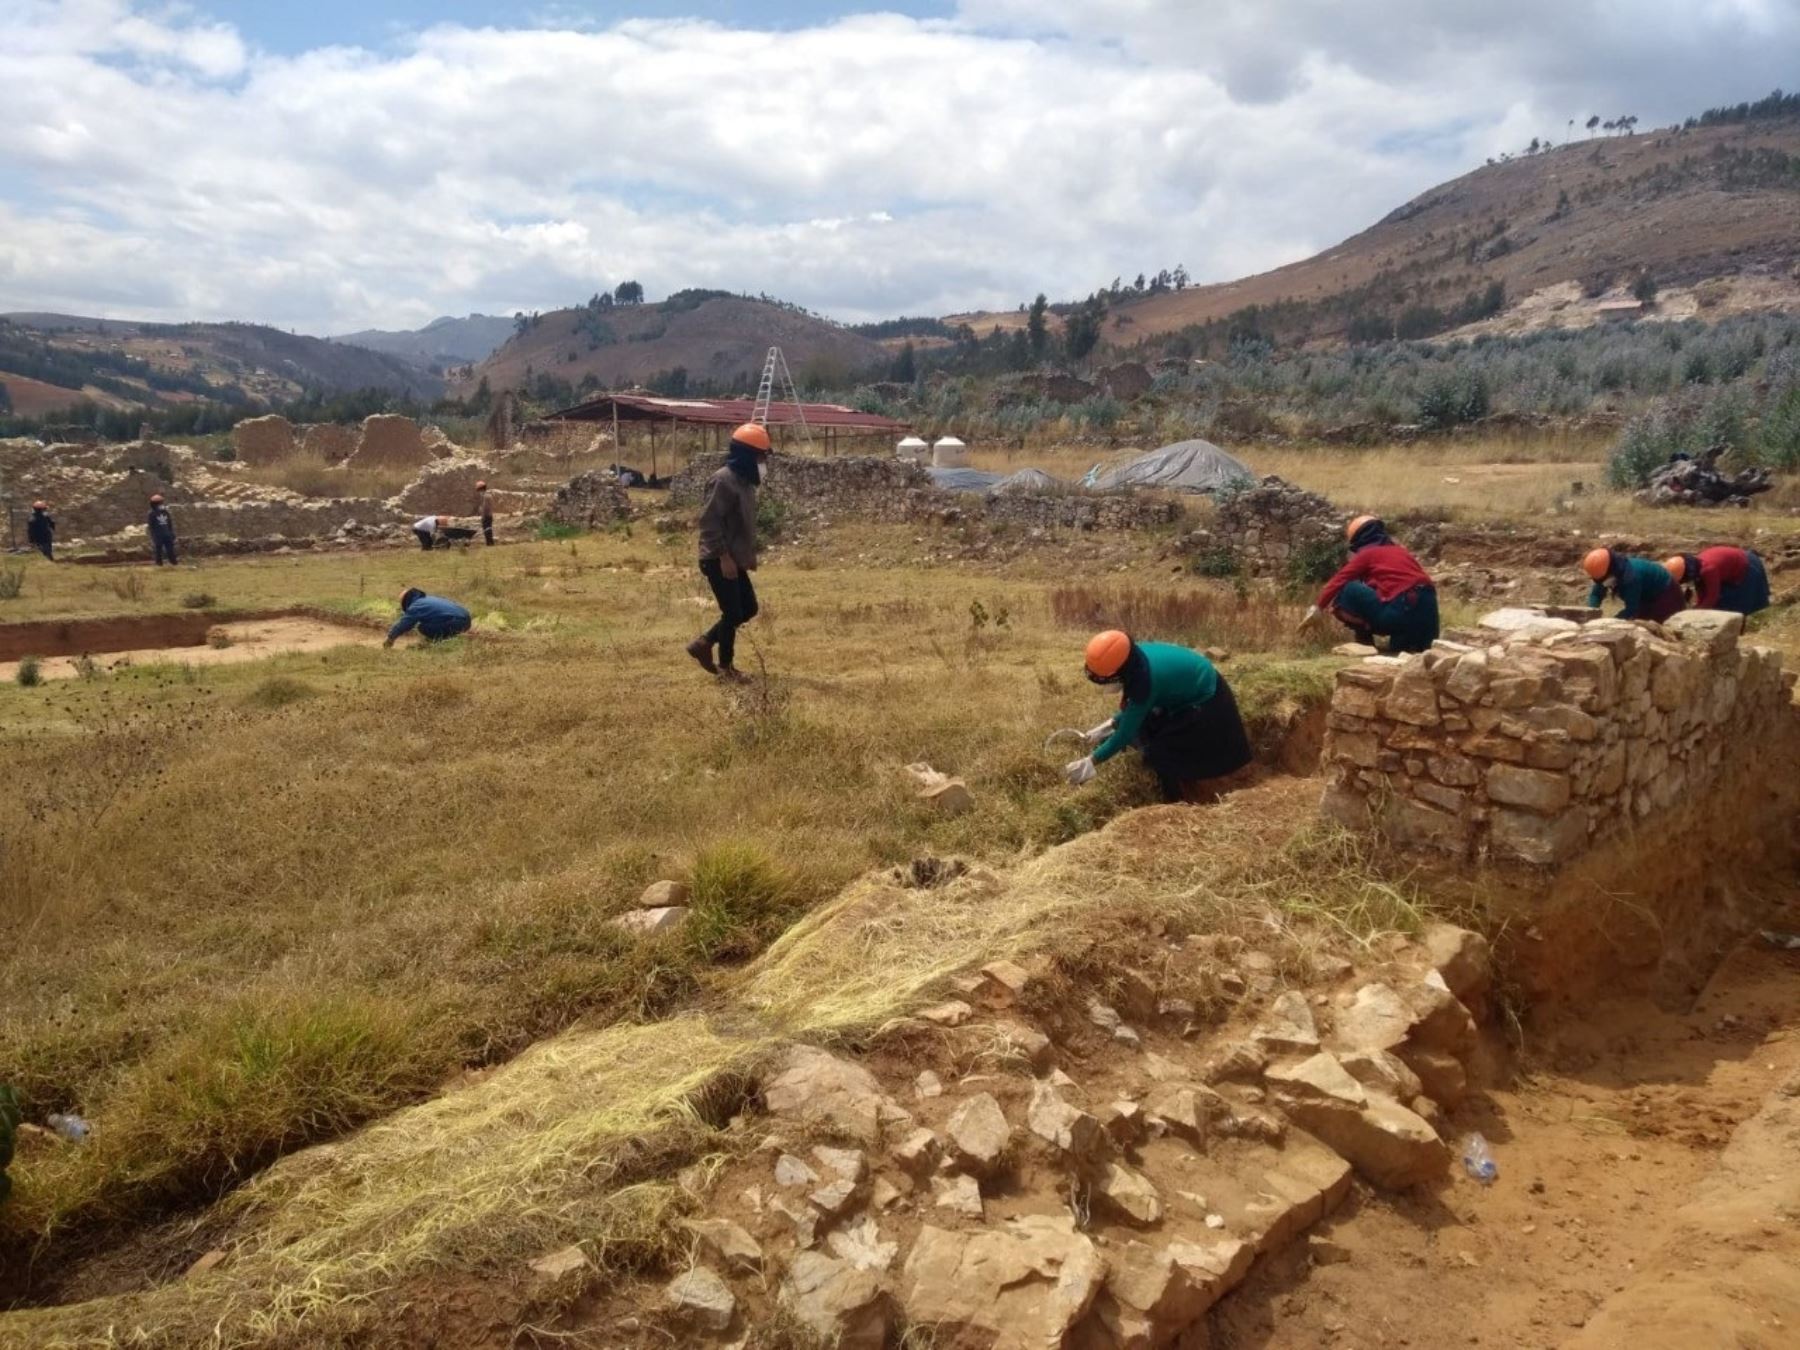 Reinician los trabajos de investigación arqueológica en el sitio Wiracochapampa, ubicado en la sierra de La Libertad. Las labores se reanudaron cumpliendo los protocolos de salud para evitar el coronavirus. ANDINA/Difusión